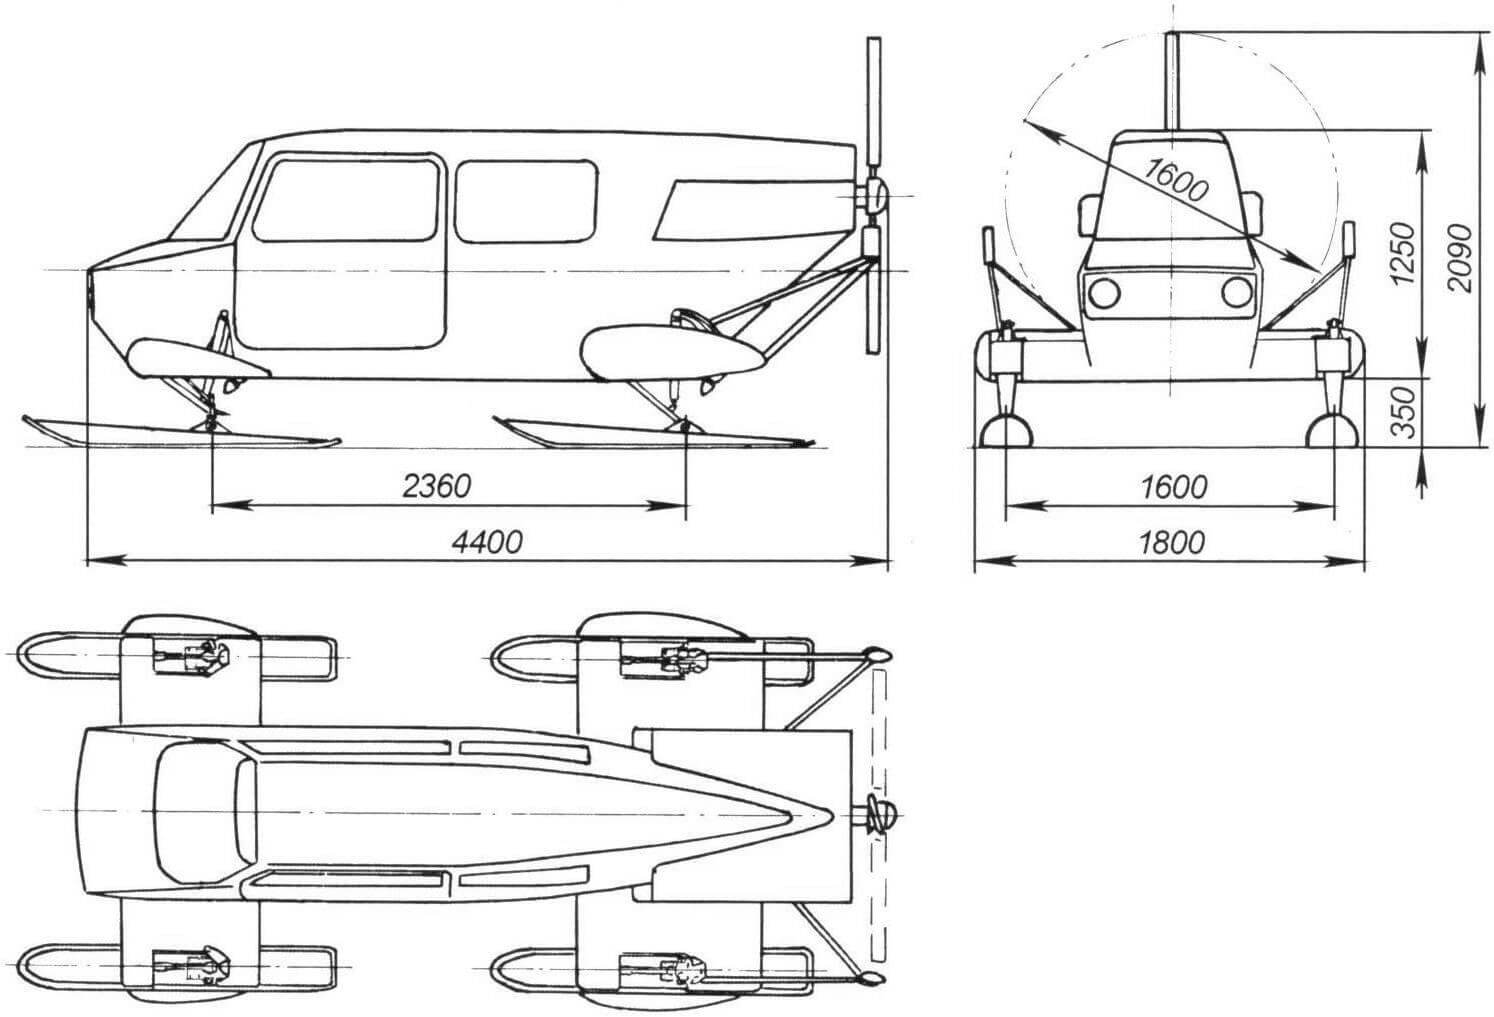 Общий вид и габаритные размеры аэросаней Ка-36 «Ветерок»